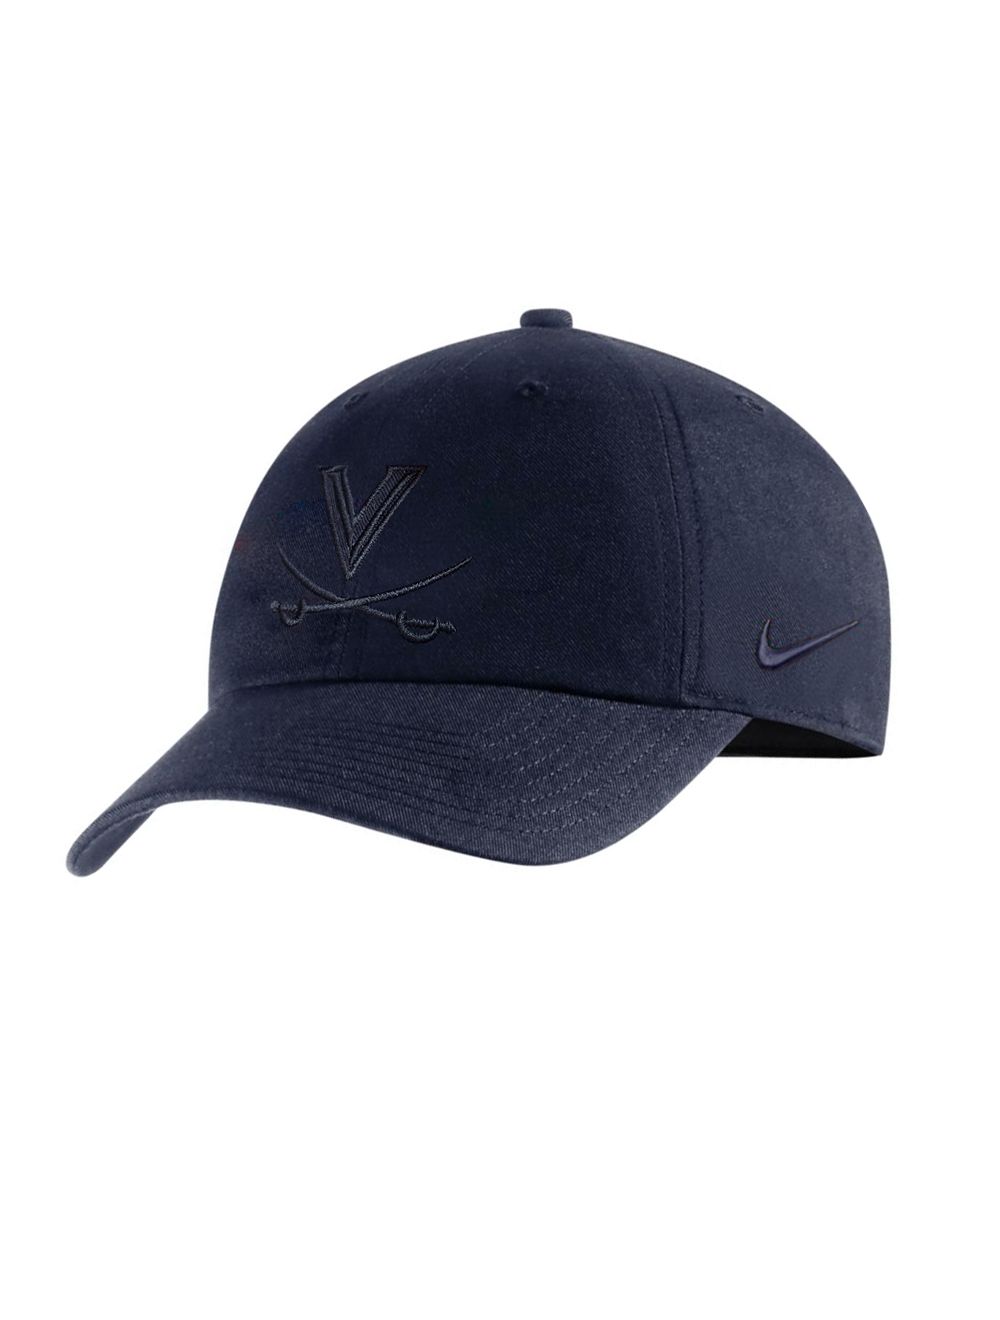 UVA Athletics University Of Virginia Nike Heritage86 Hat - Black